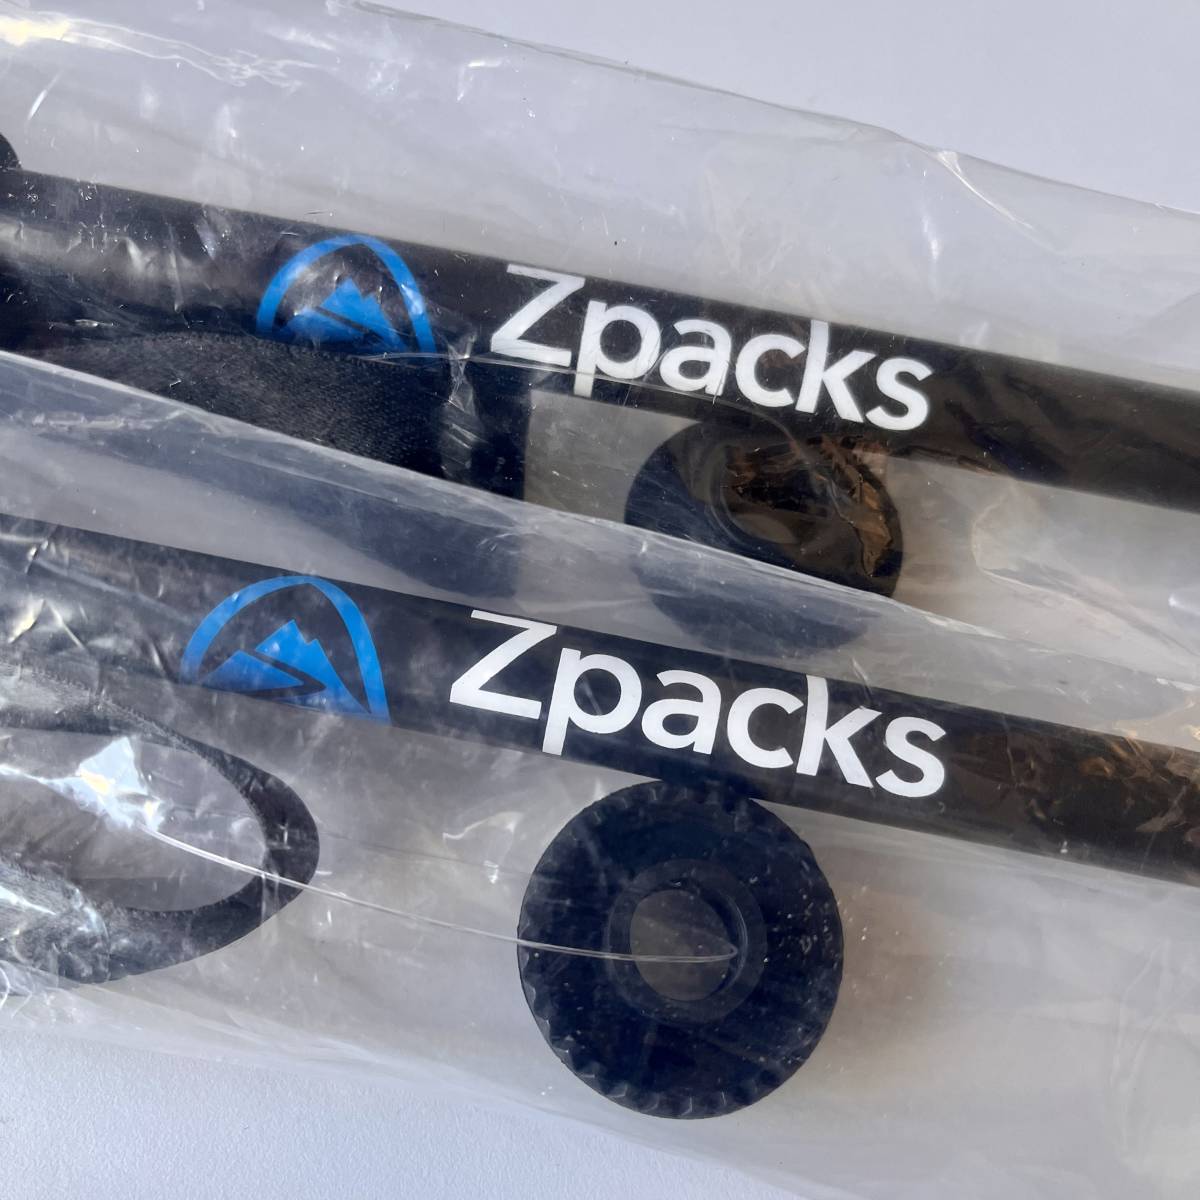 [ новый товар * бесплатная доставка ]Zpacks Minimalist Trekking Pole 2 шт. комплект внутренний не распродажа Mini ma список треккинг paul (pole) карбоновый 